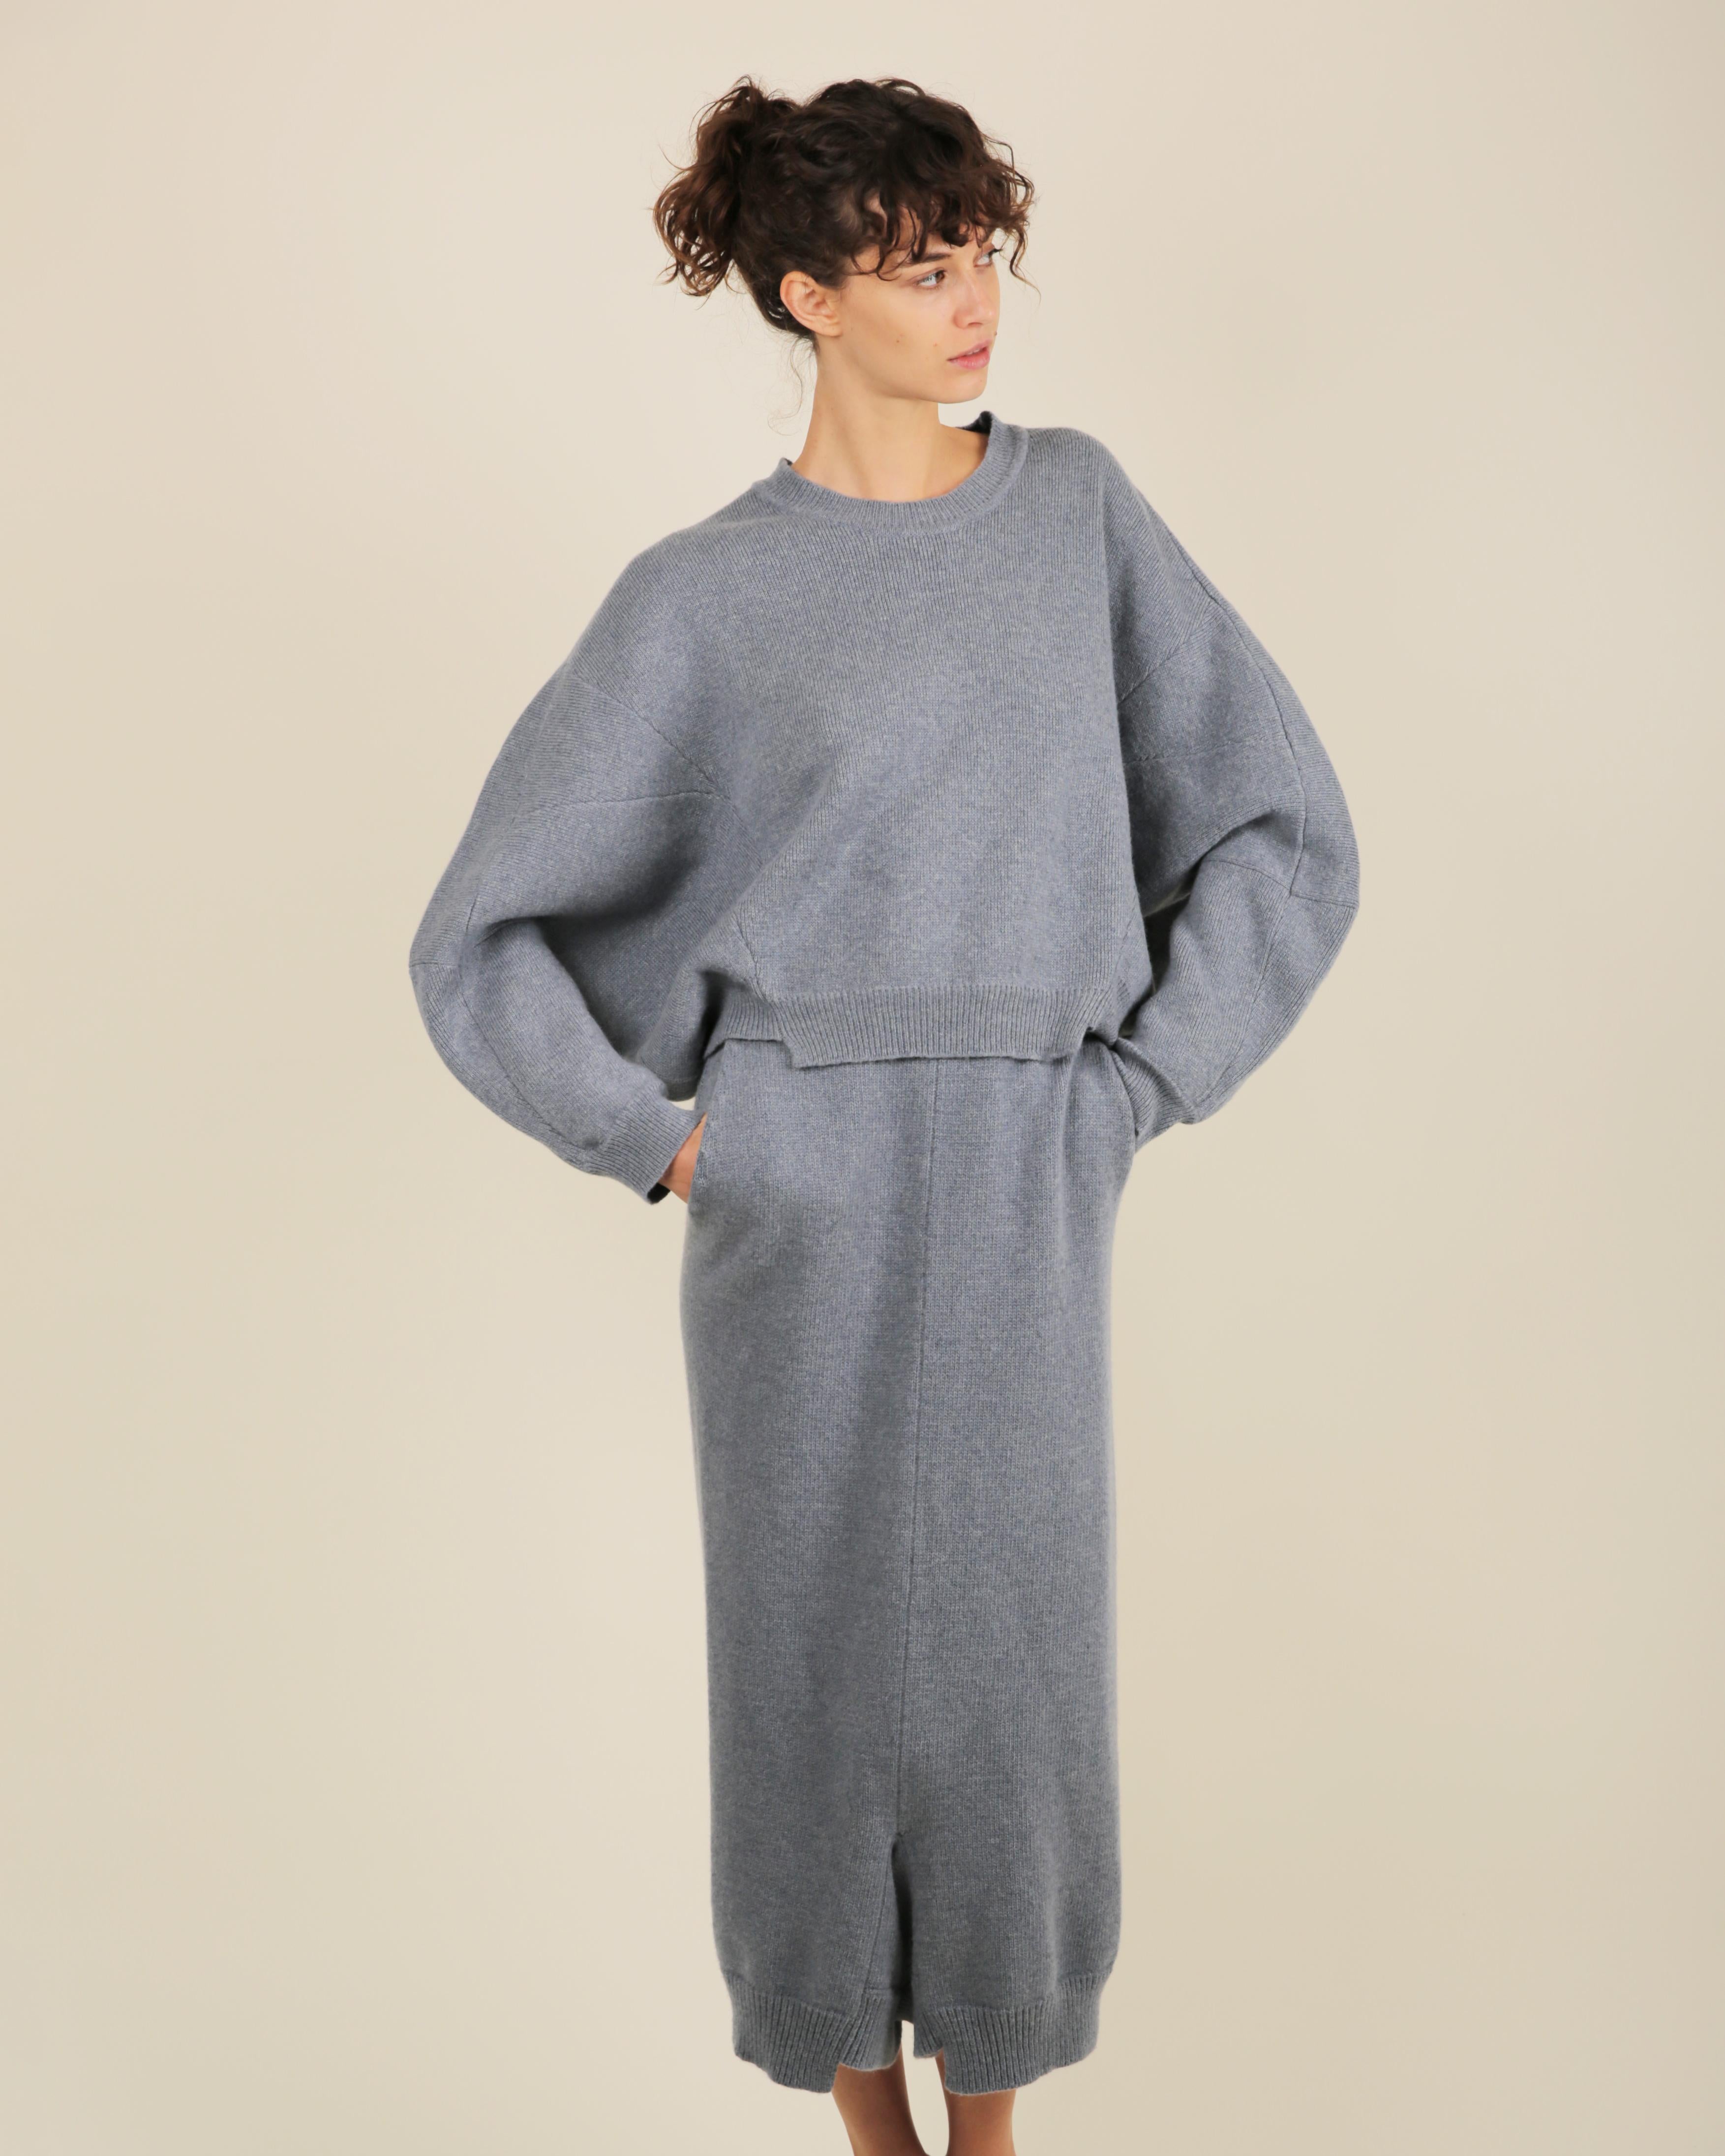 Stella McCartney Fall18 blue oversized wool alpaca matching sweater dress pants For Sale 5